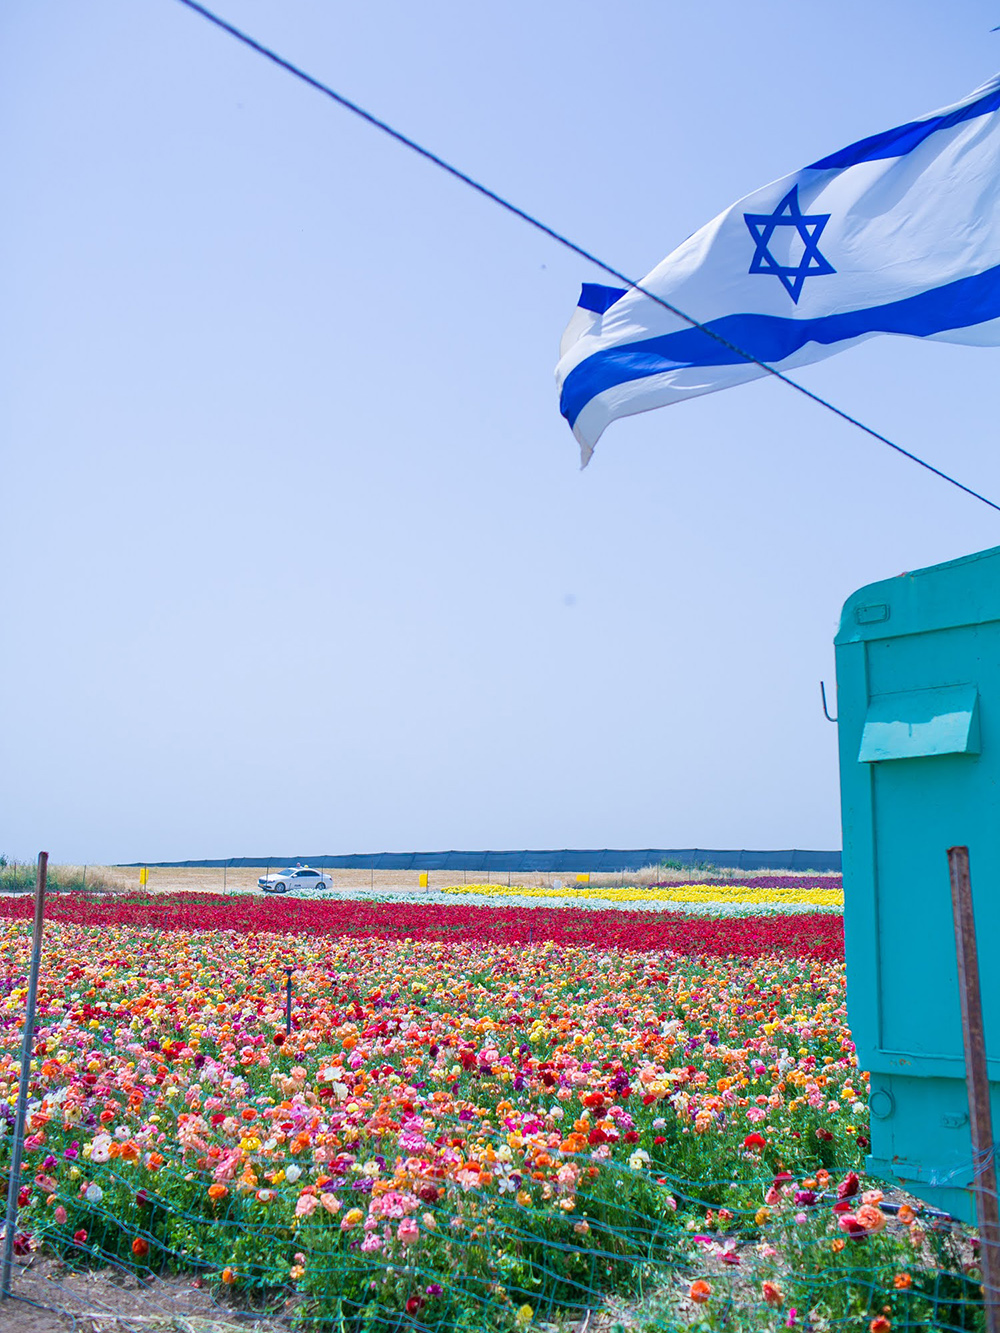 Израиль, несмотря на небольшую площадь, удивительно разнообразен. Например, я бы никогда не подумала, что встречу поля ранункулюсов в поселении Беэр⁠-⁠Тувия